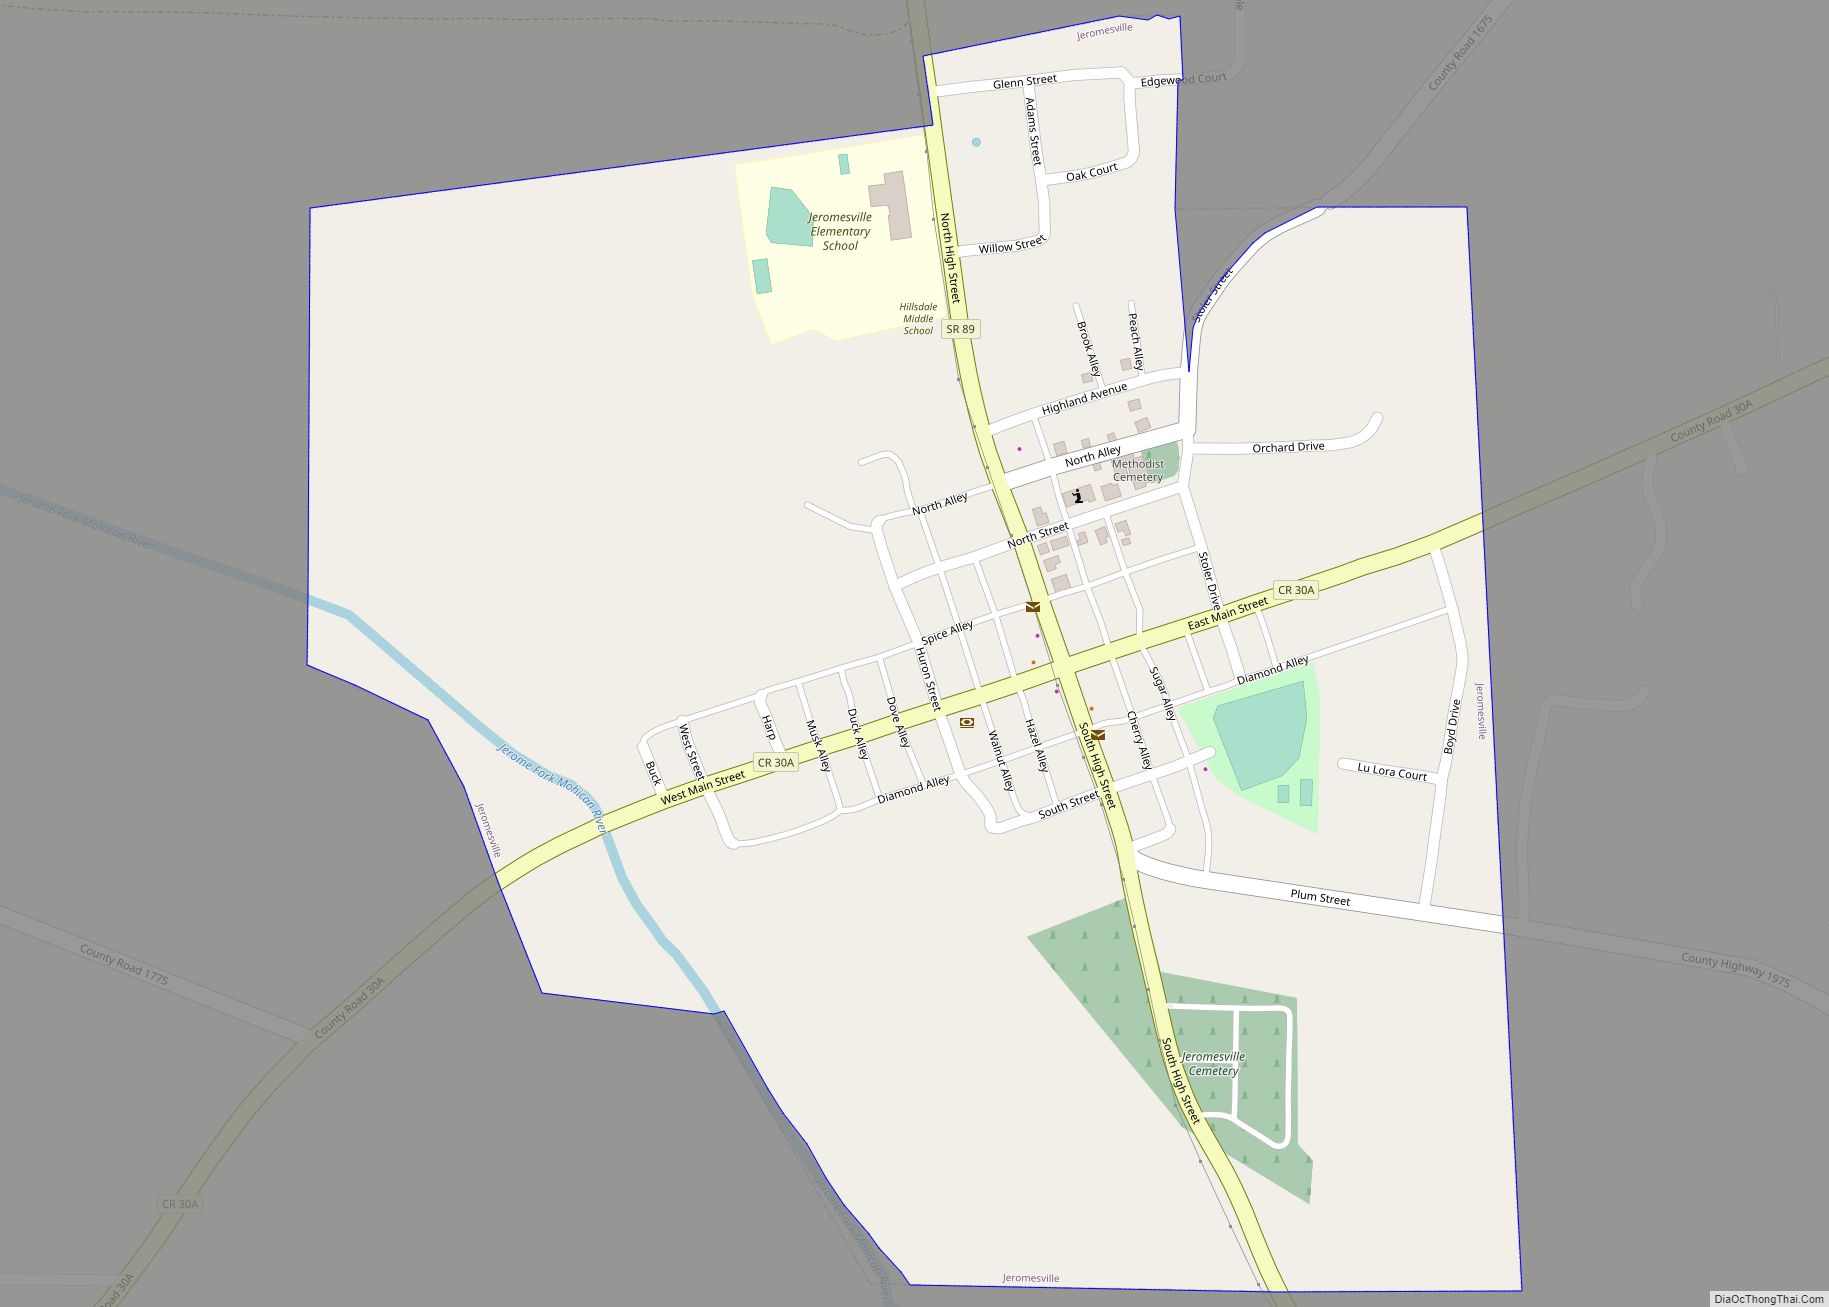 Map of Jeromesville village